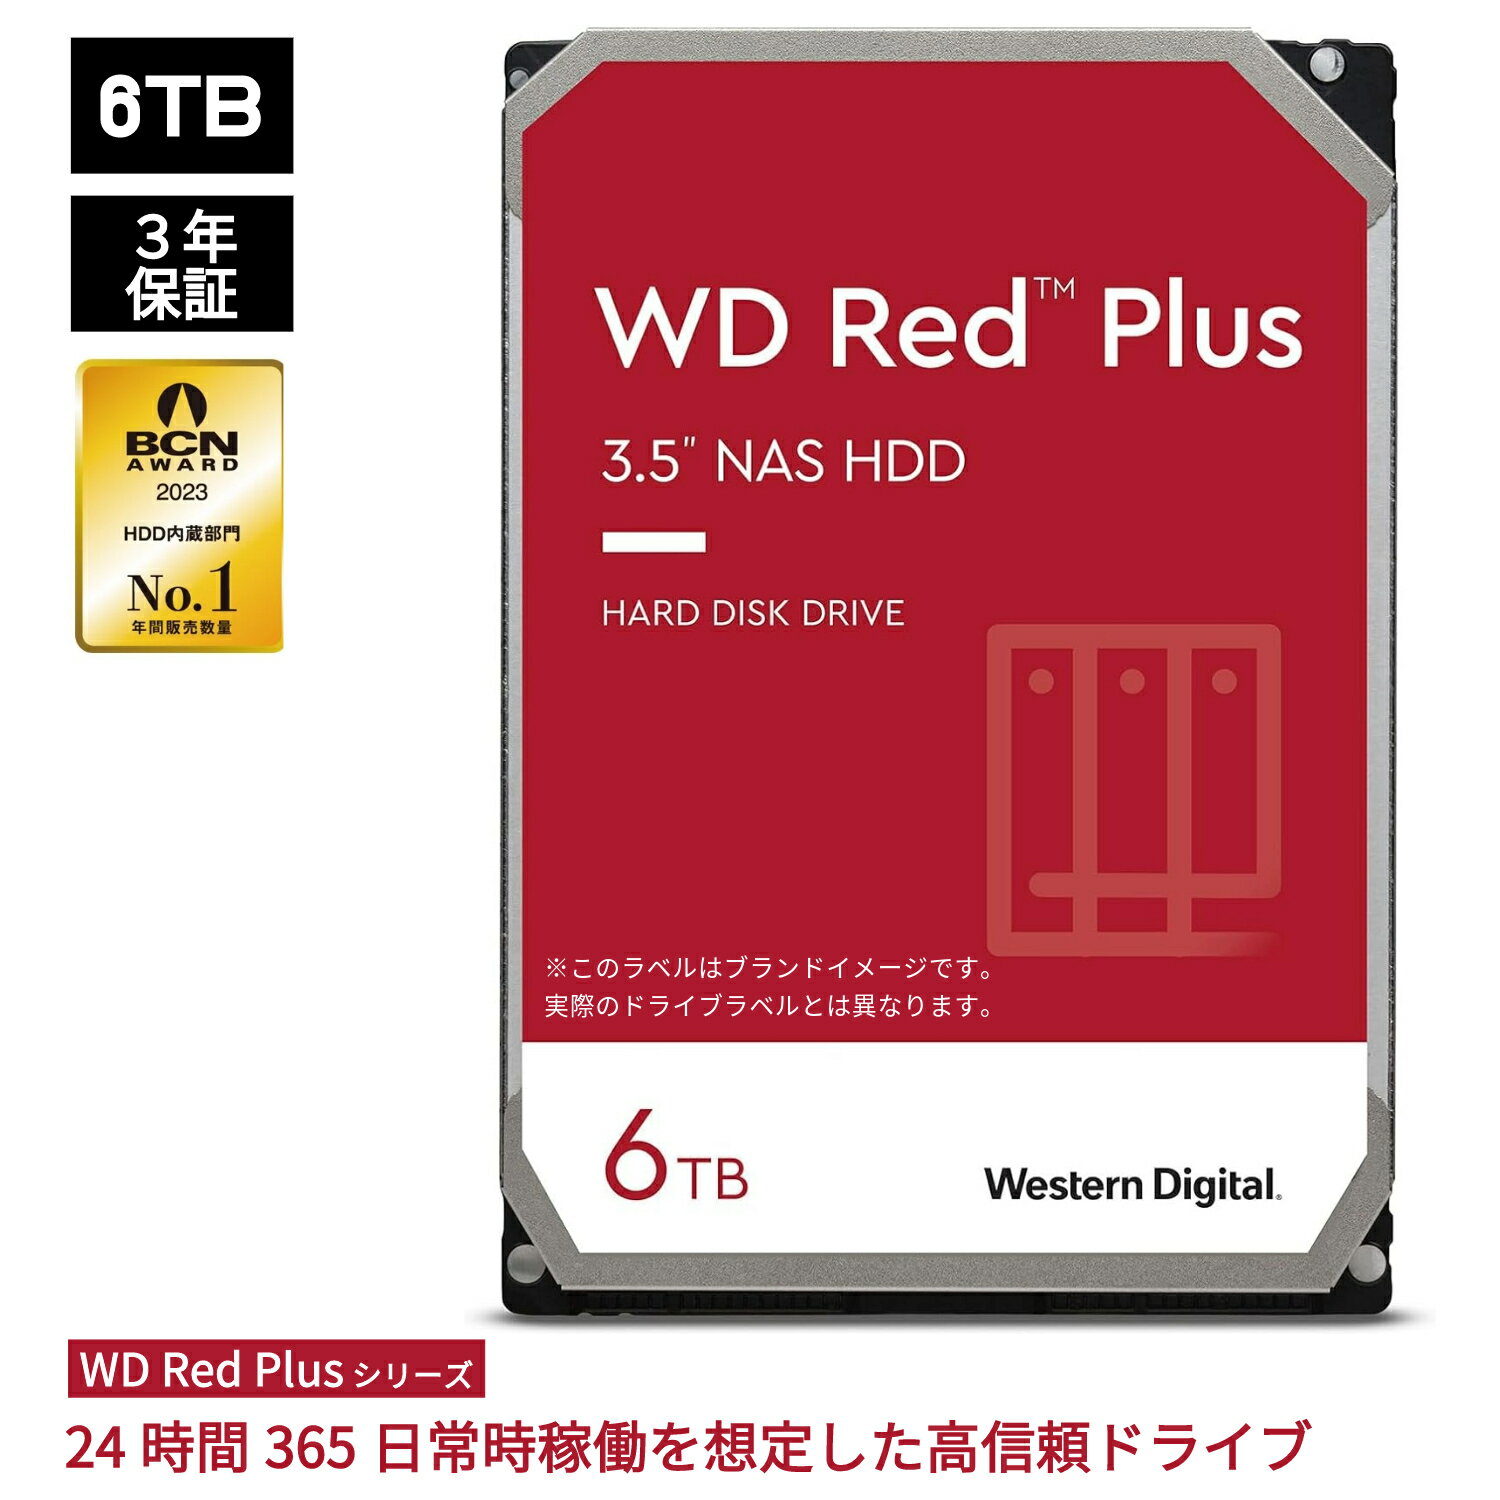 【P5倍6/4 20:00~6/11 1:59】 Western Digital ウエスタンデジタル WD Red Plus 内蔵 HDD ハードディスク 6TB CMR 3.5インチ SATA 5400rpm キャッシュ256MB NAS メーカー保証3年 WD60EFPX | 内蔵hdd バックアップ 用 パソコン ハードディスクドライブ ec 大容量